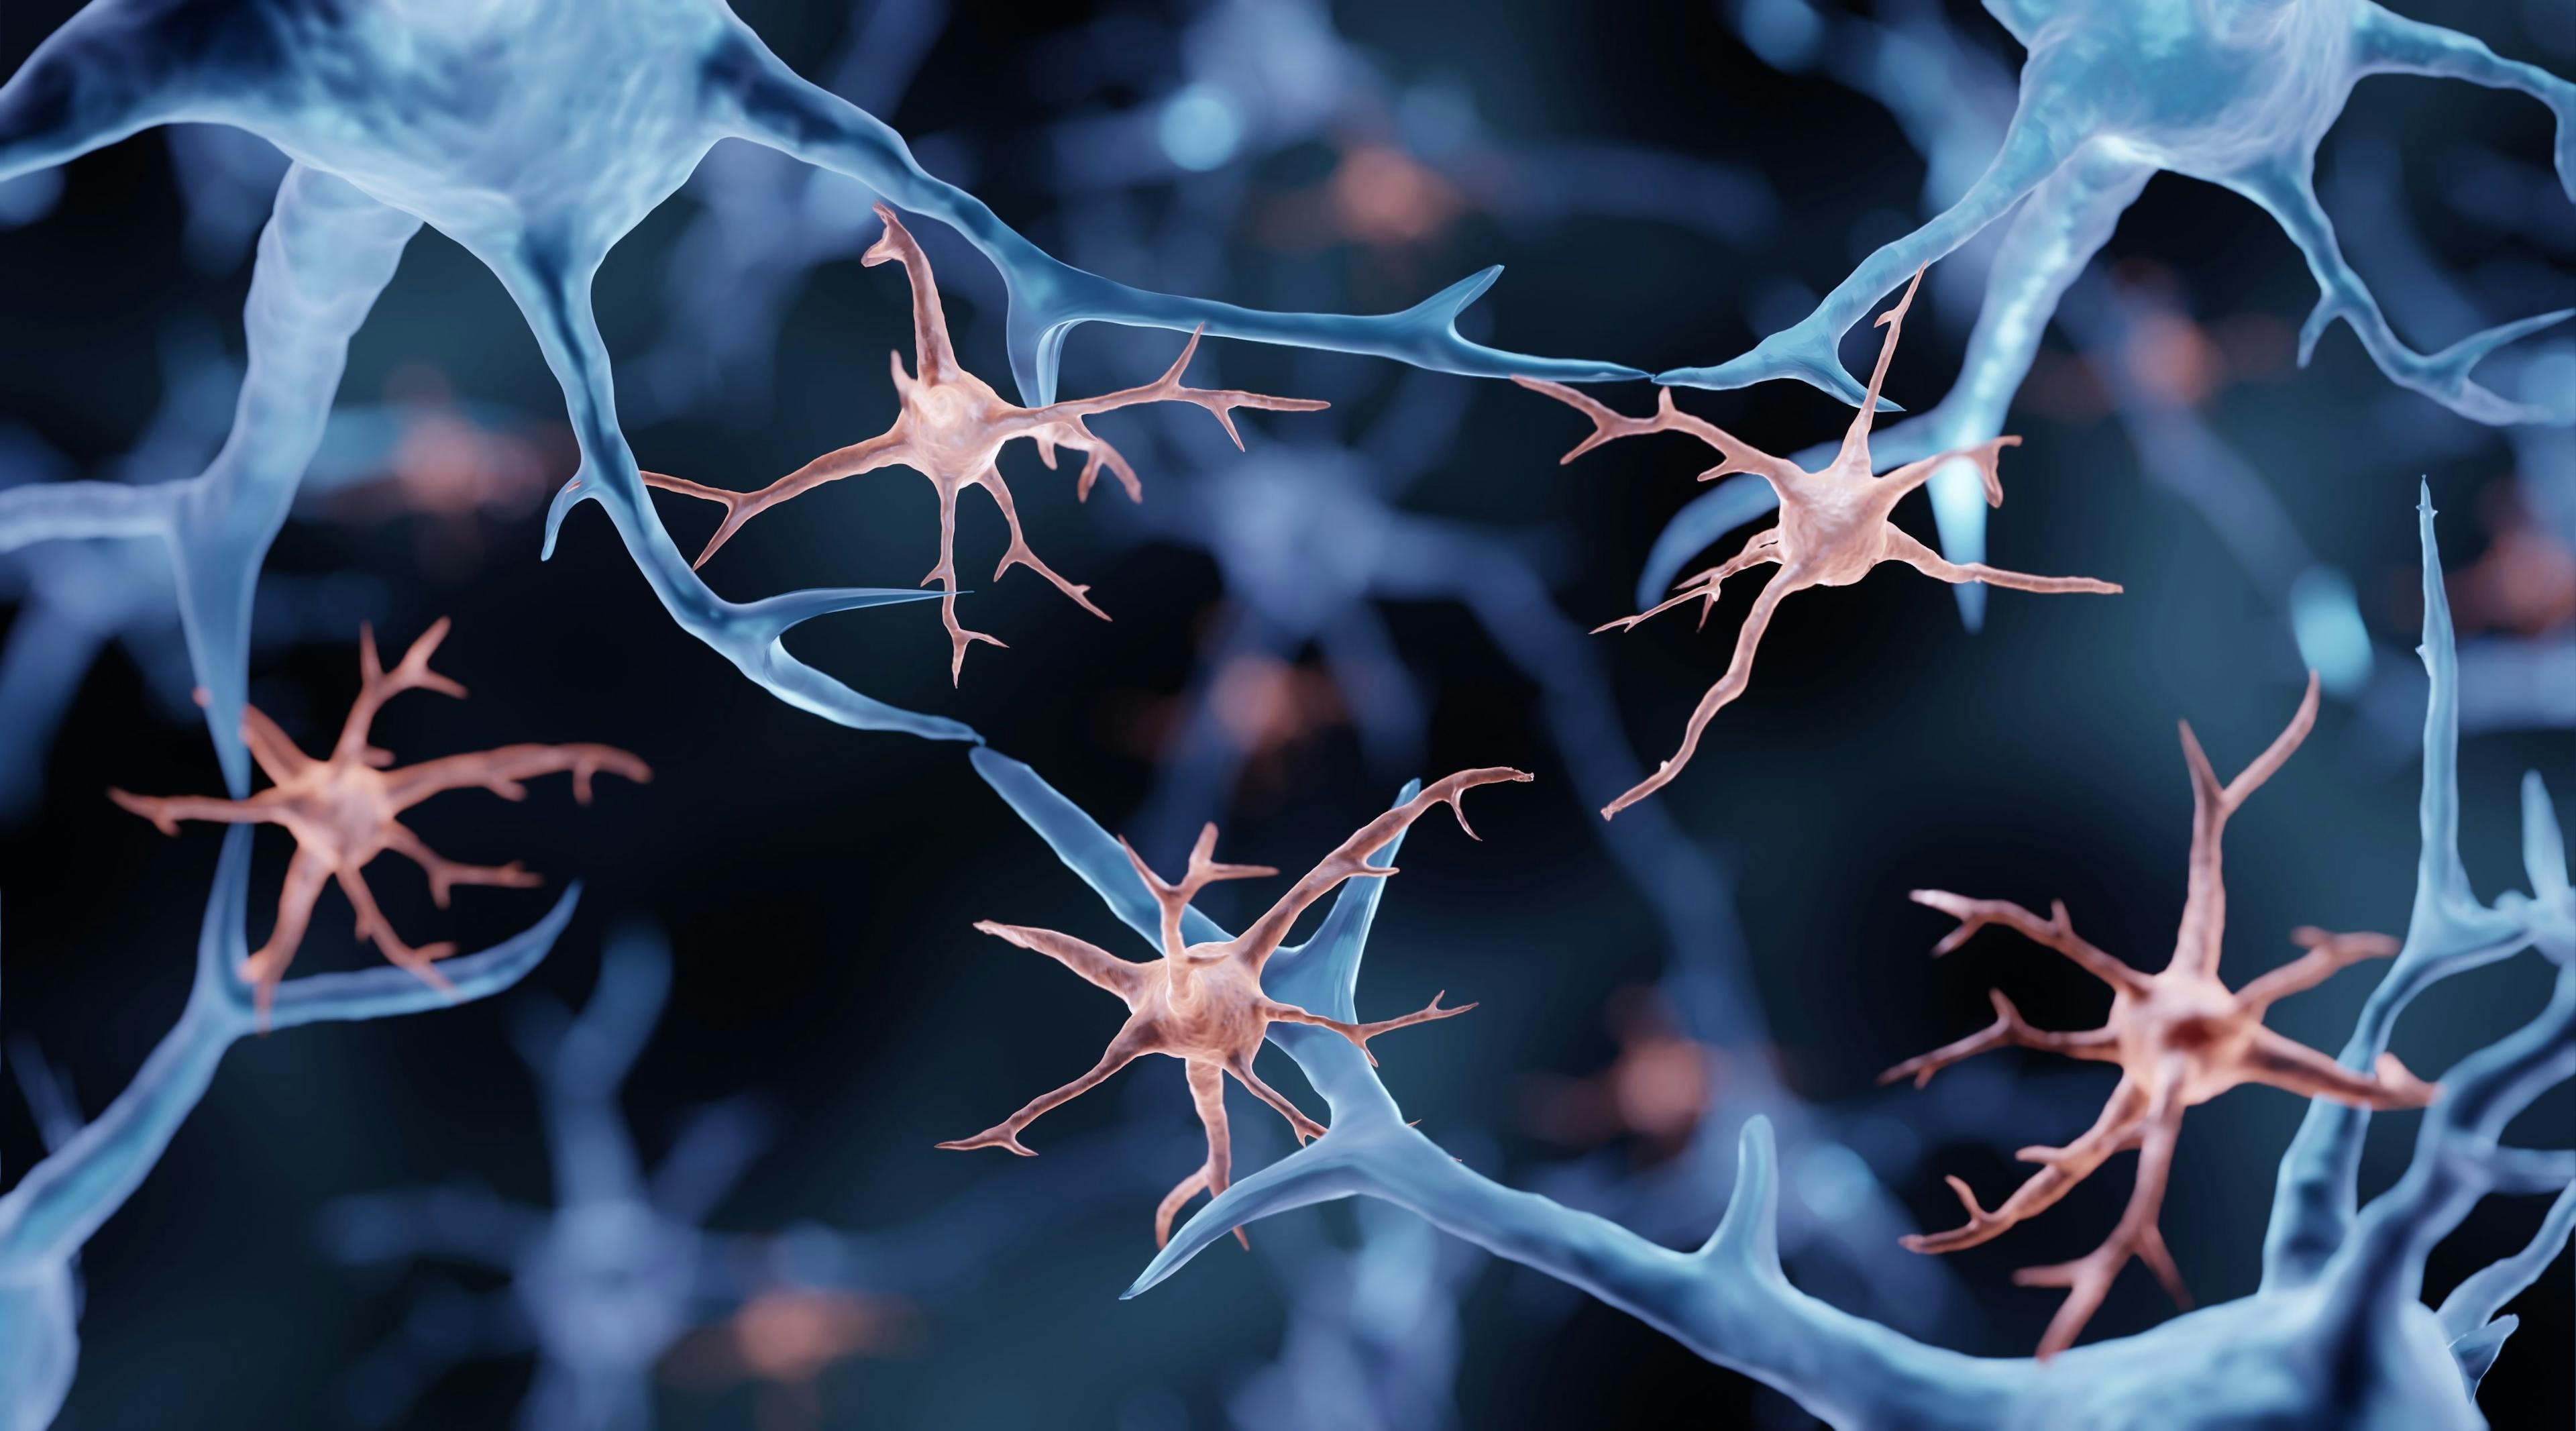 Microglia are immune cells in the brain | Image Credit: © Artur - stock.adobe.com